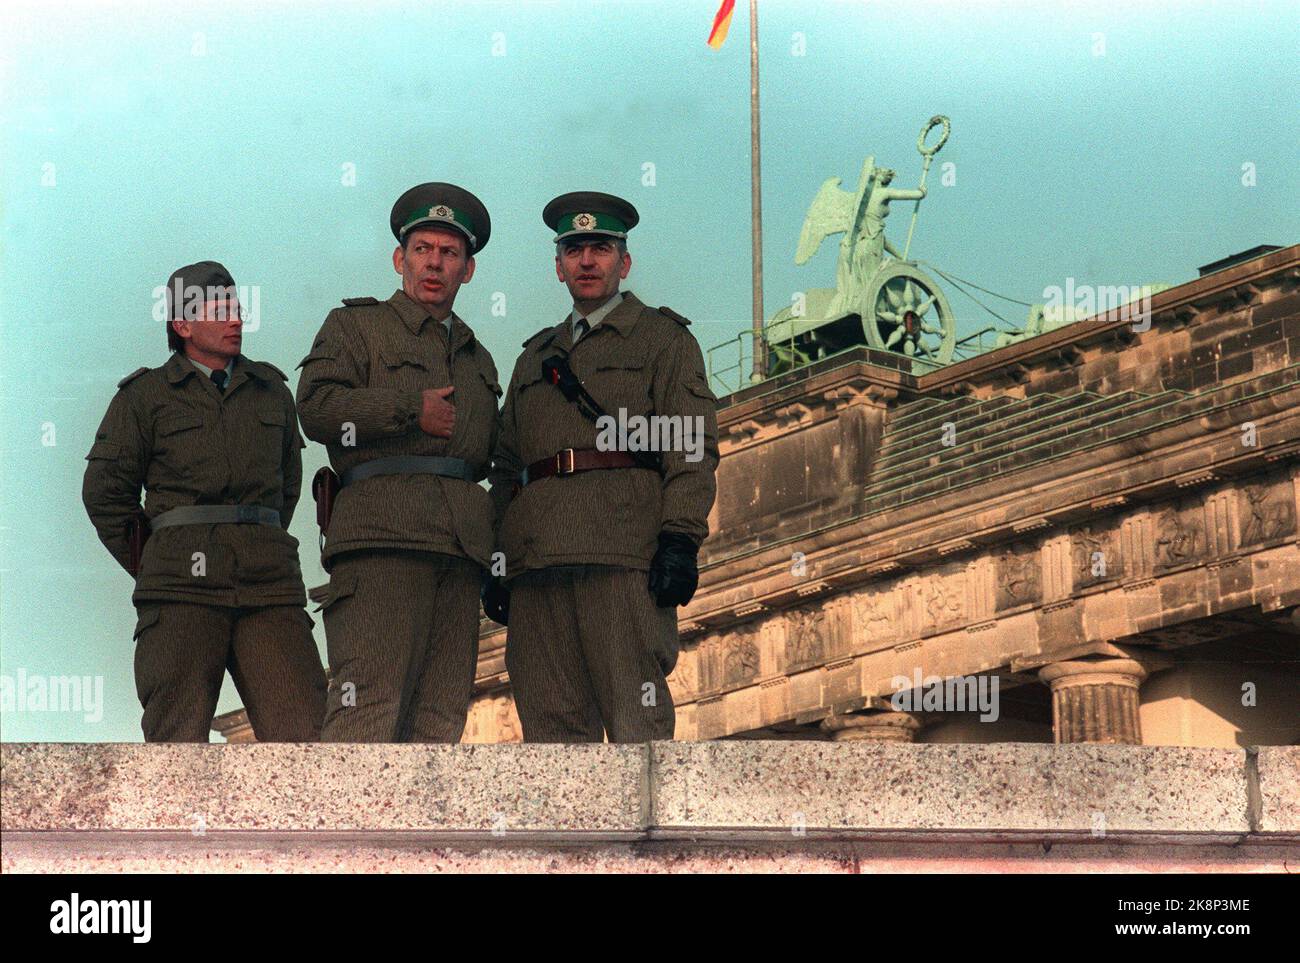 Berlin Deutschland 1989112 Fall der Berliner Mauer: DDR-Soldaten an der Mauer am Brandenburger Tor. Foto: Jørn H. Moen / NTB. Stockfoto